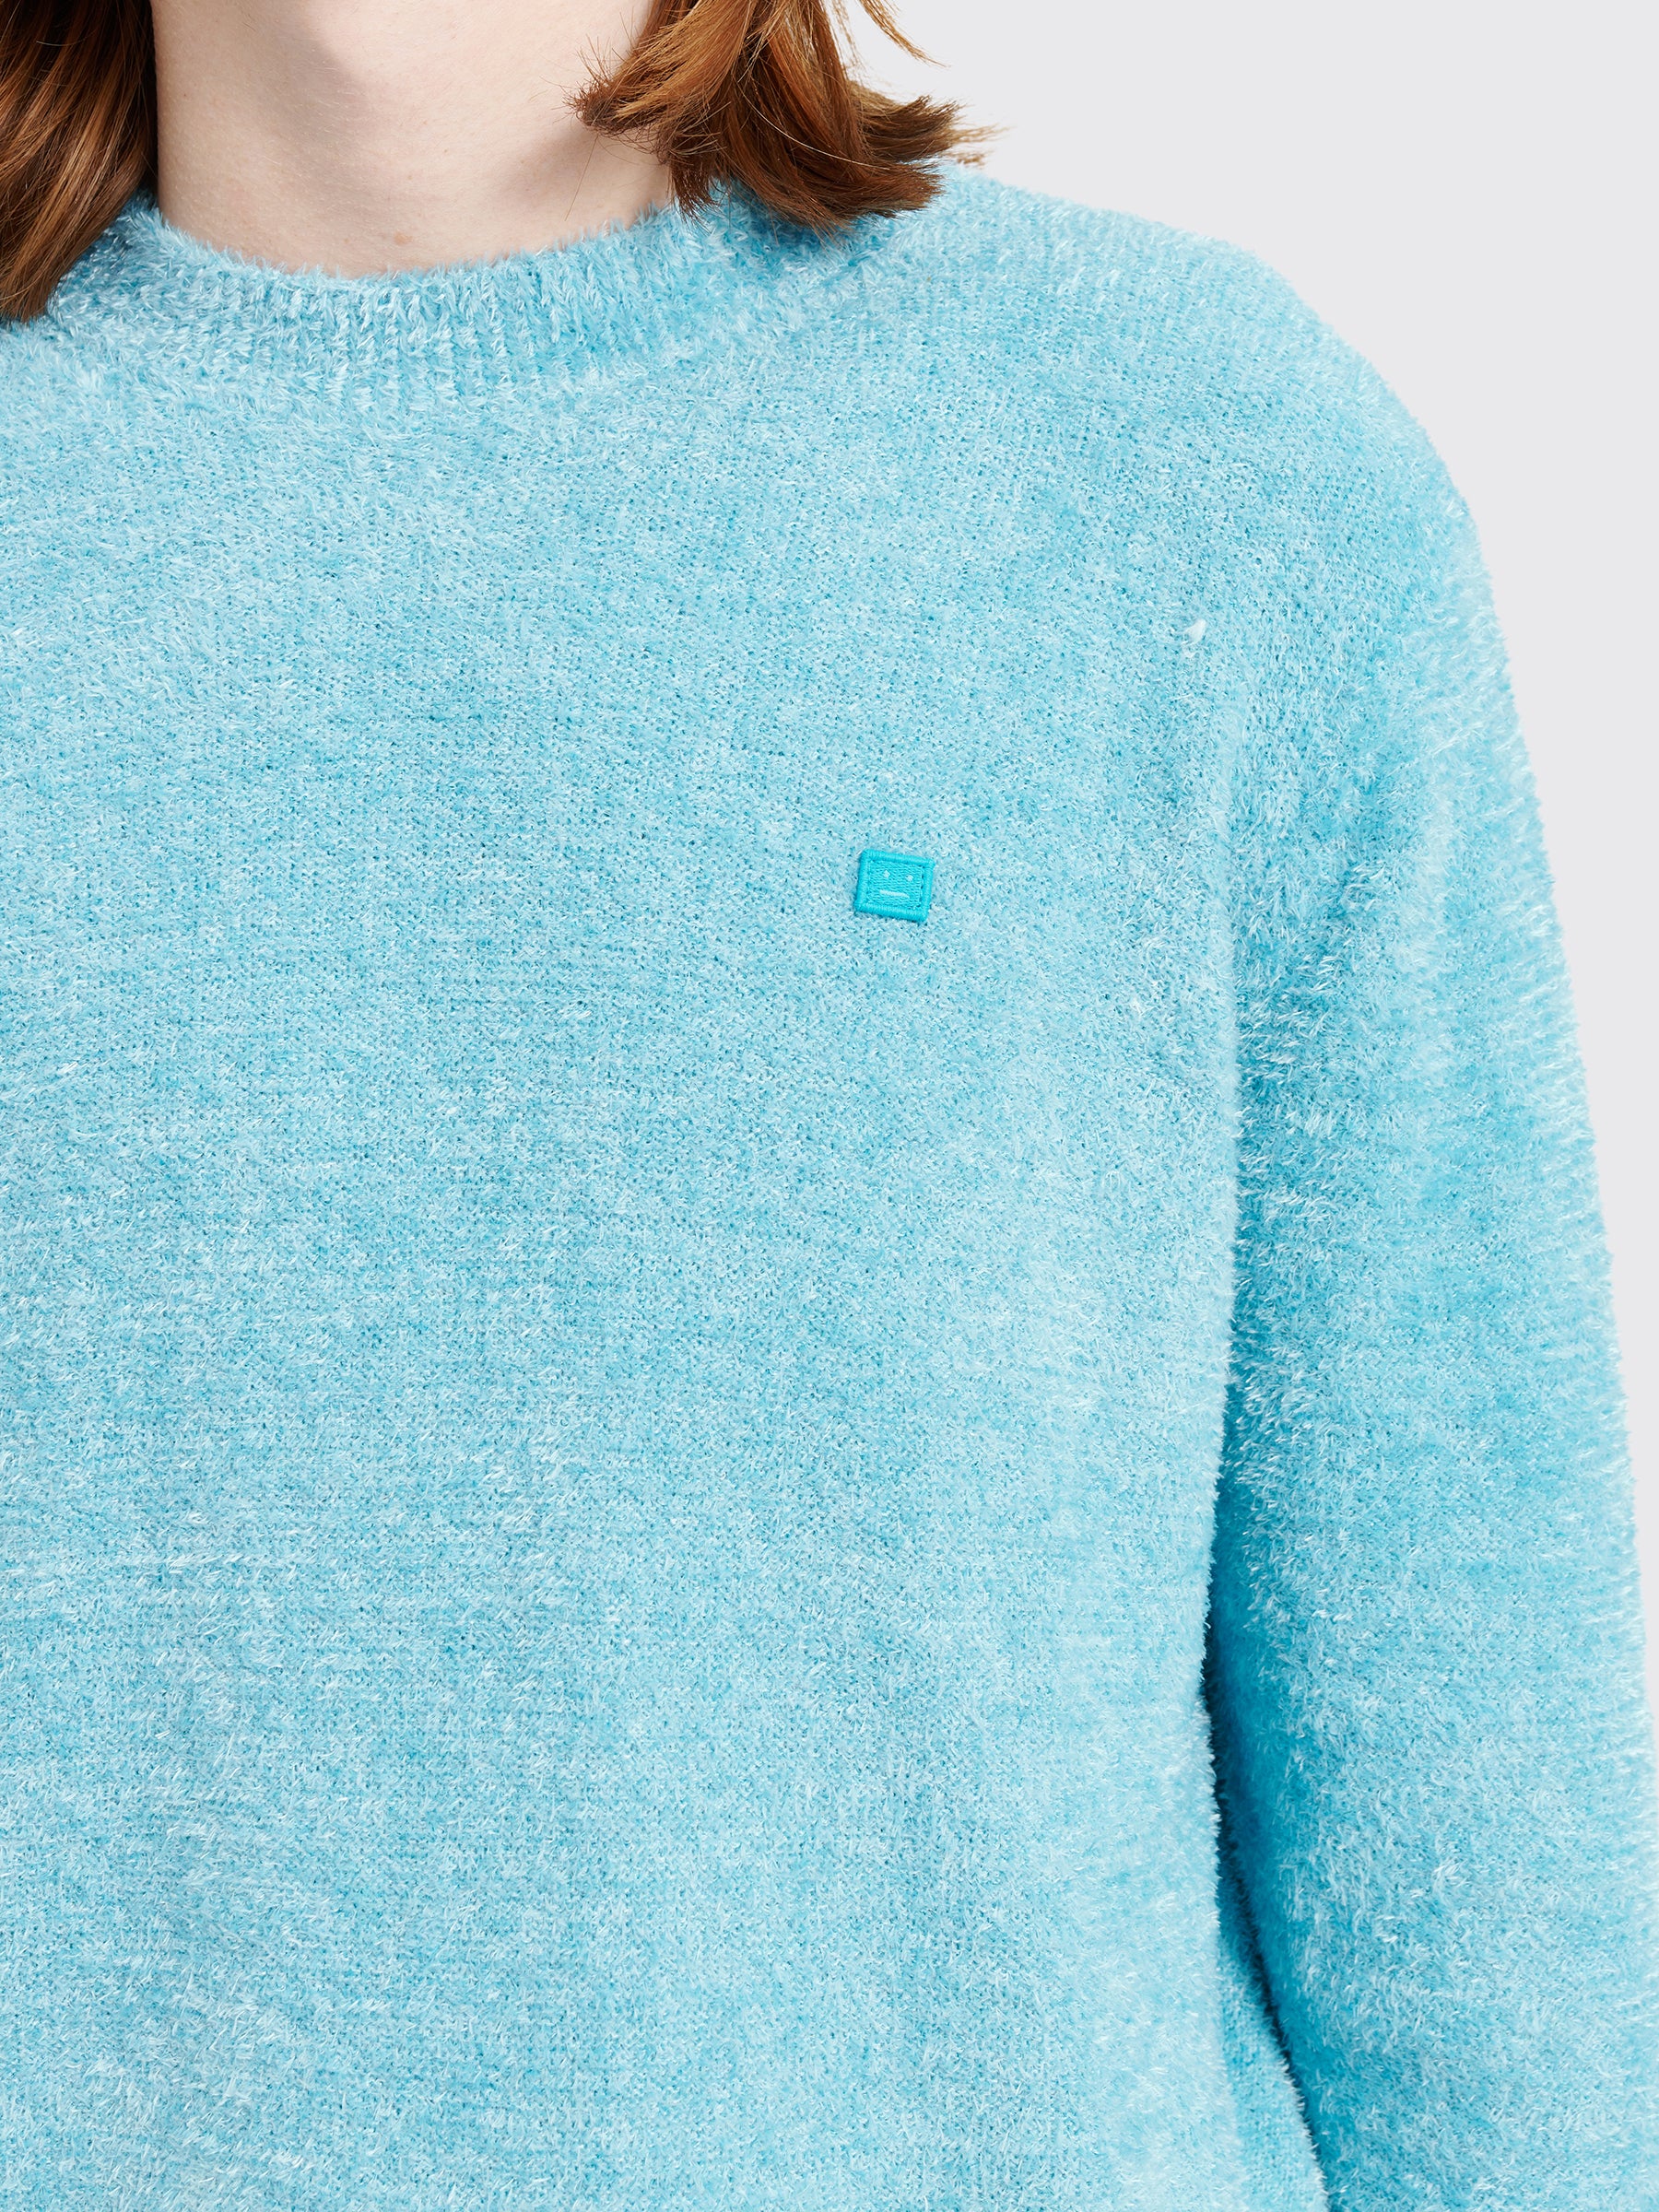 Acne Studios Face Crewneck Sweater Teal Blue